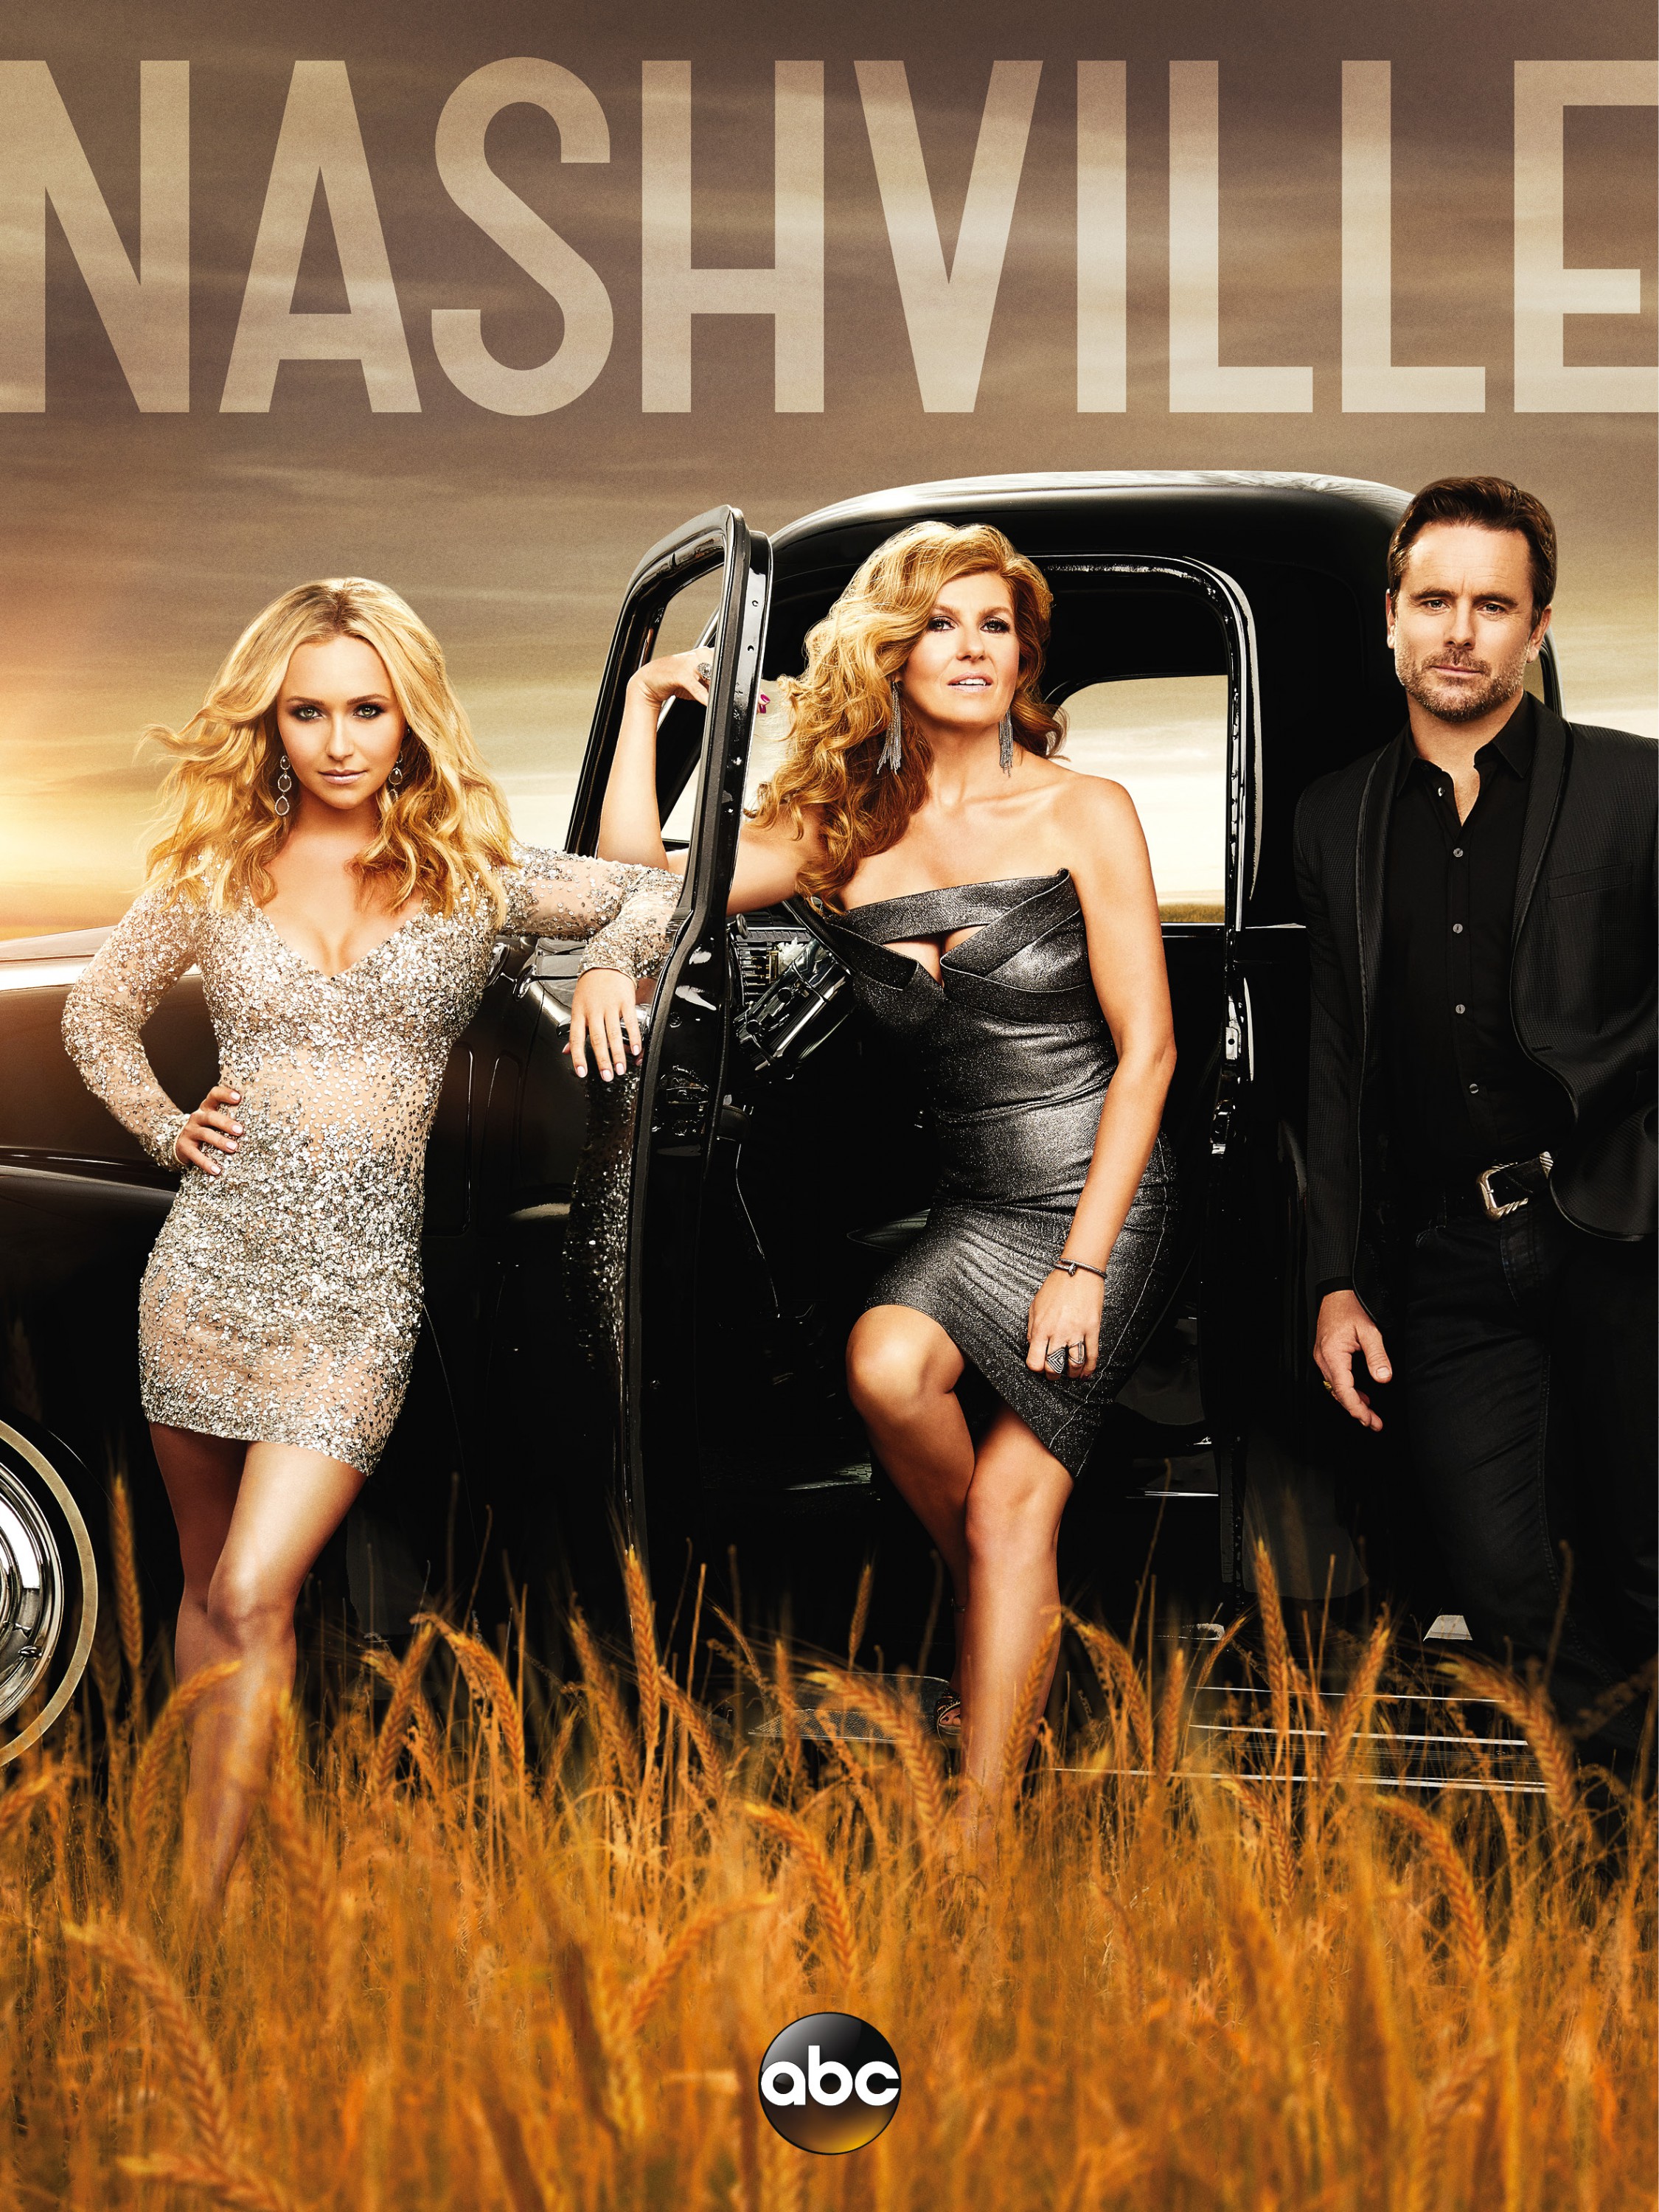 Mega Sized TV Poster Image for Nashville (#4 of 5)